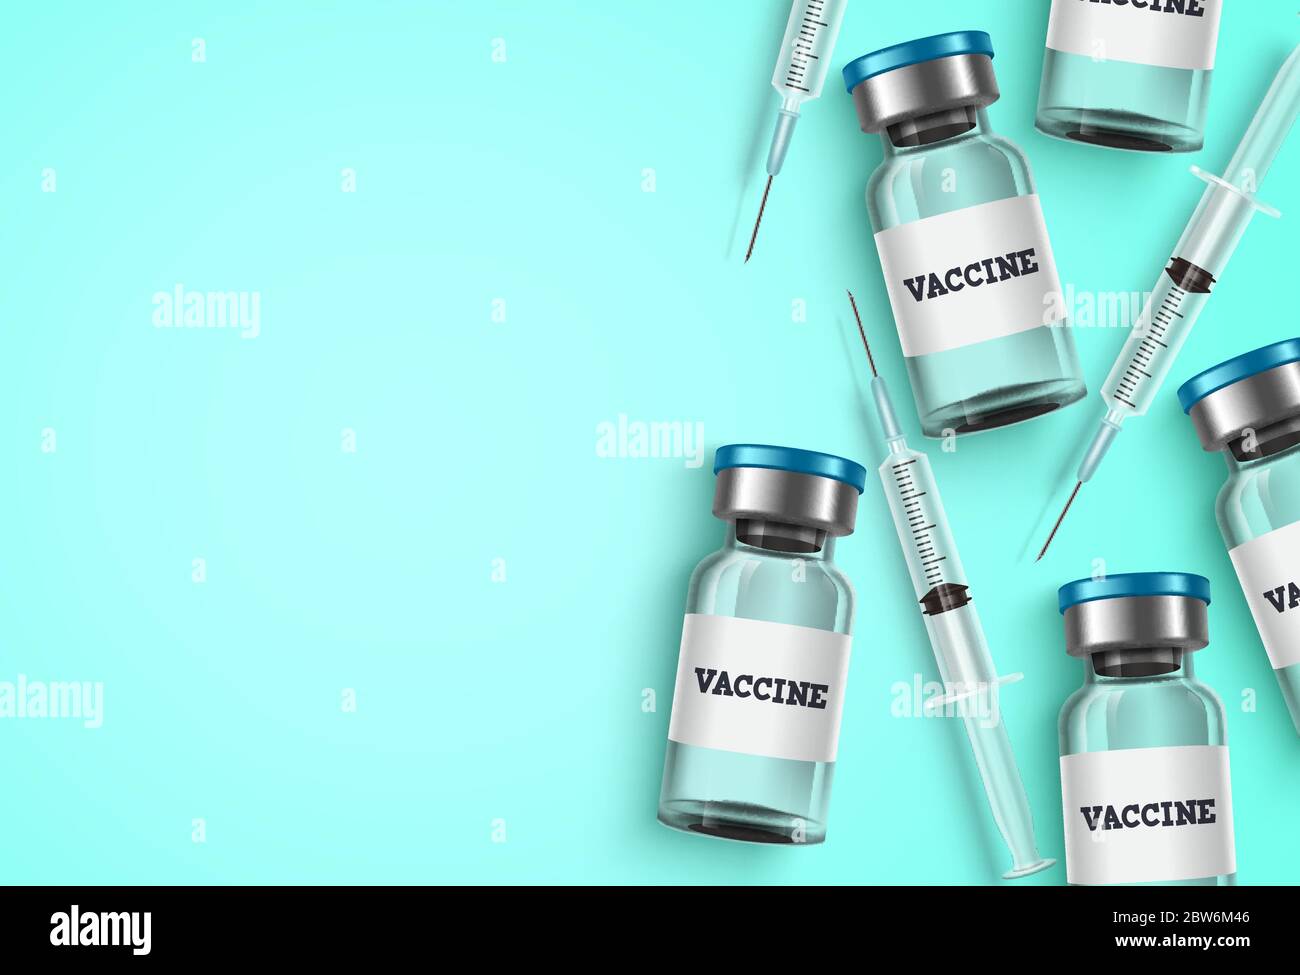 Hintergrundvorlage für Impfstoff und Spritze. Impfstoffflaschen und Spritzenspritze Medizin mit leerem Leerraum für Text für Covid-19 Virus Stock Vektor